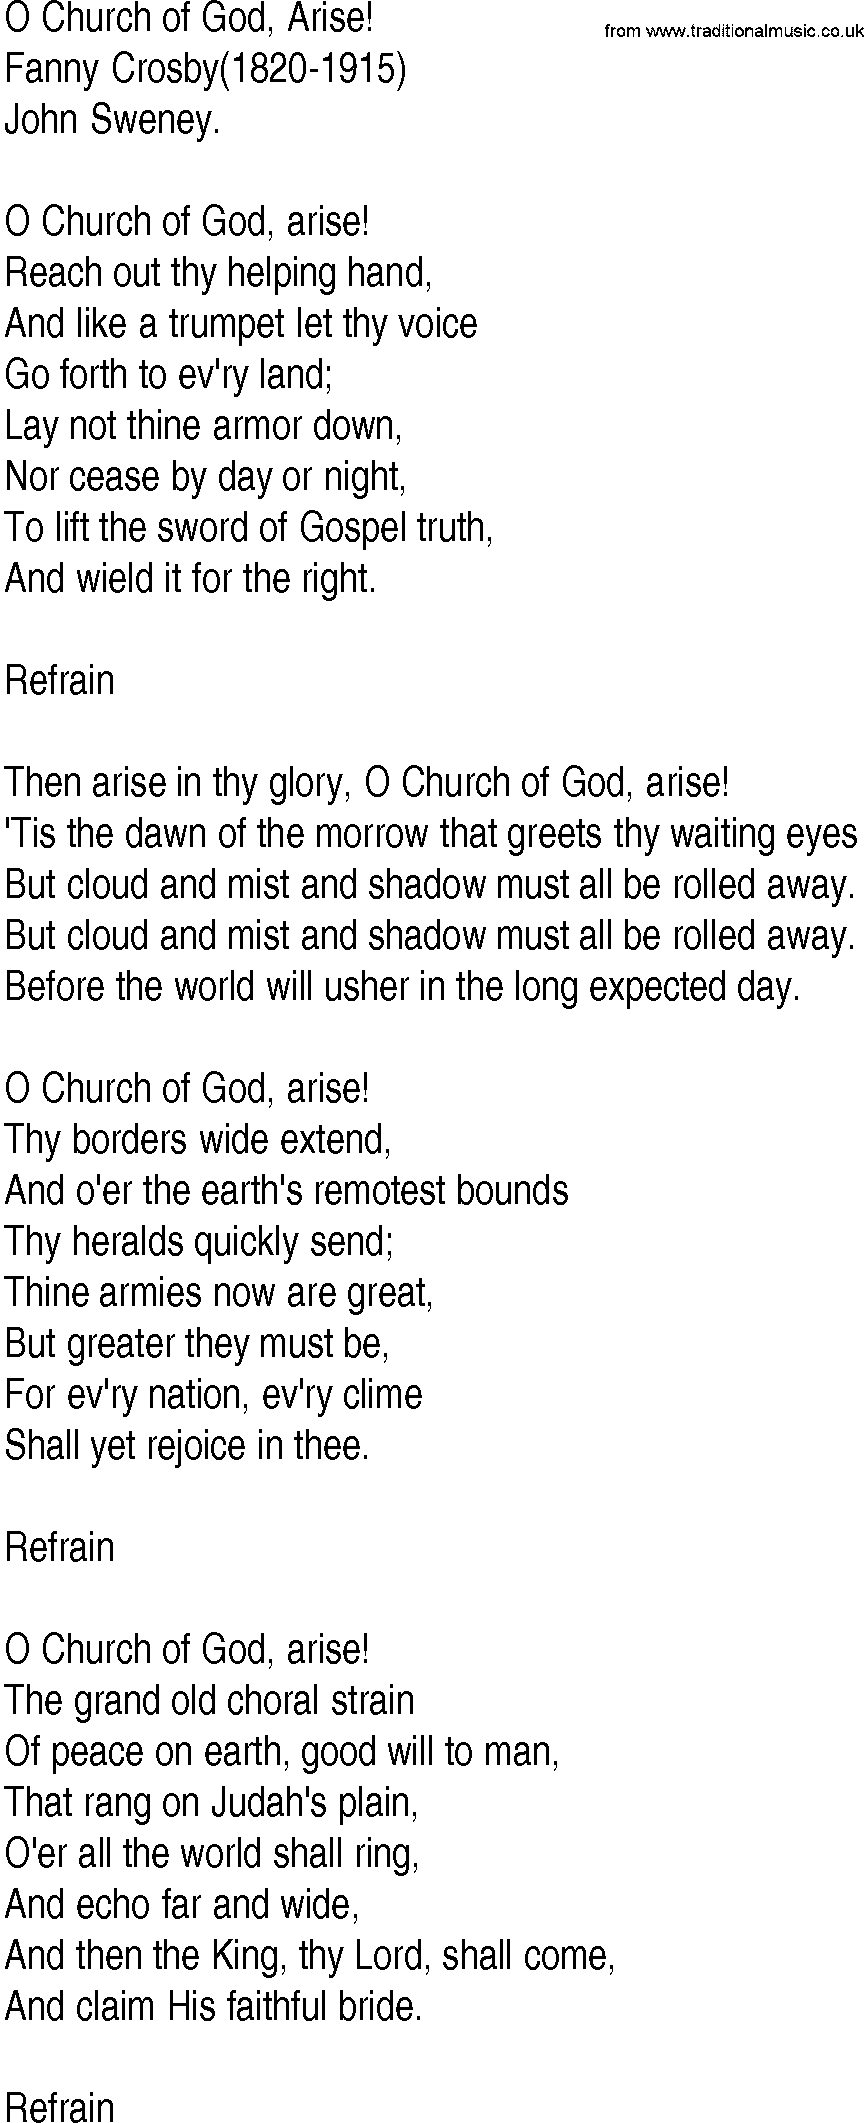 Hymn and Gospel Song: O Church of God, Arise! by Fanny Crosby lyrics